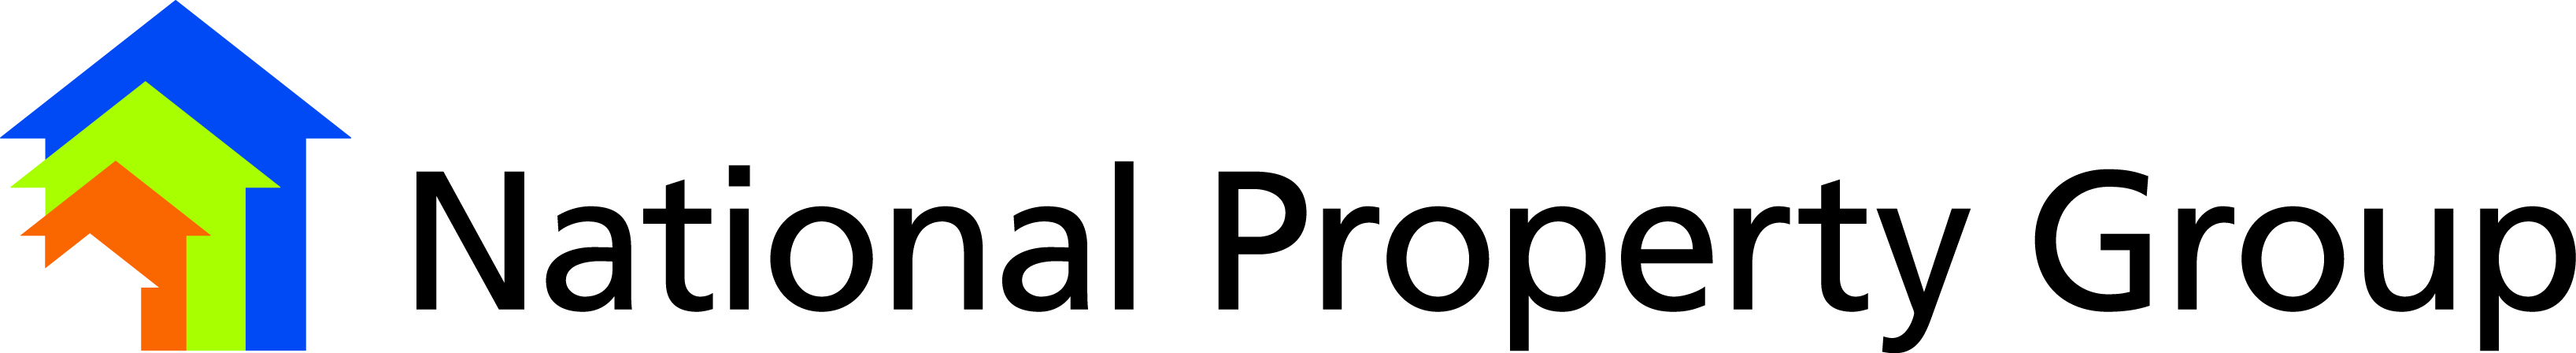 Glenn Ackroyd National Property Group Logo